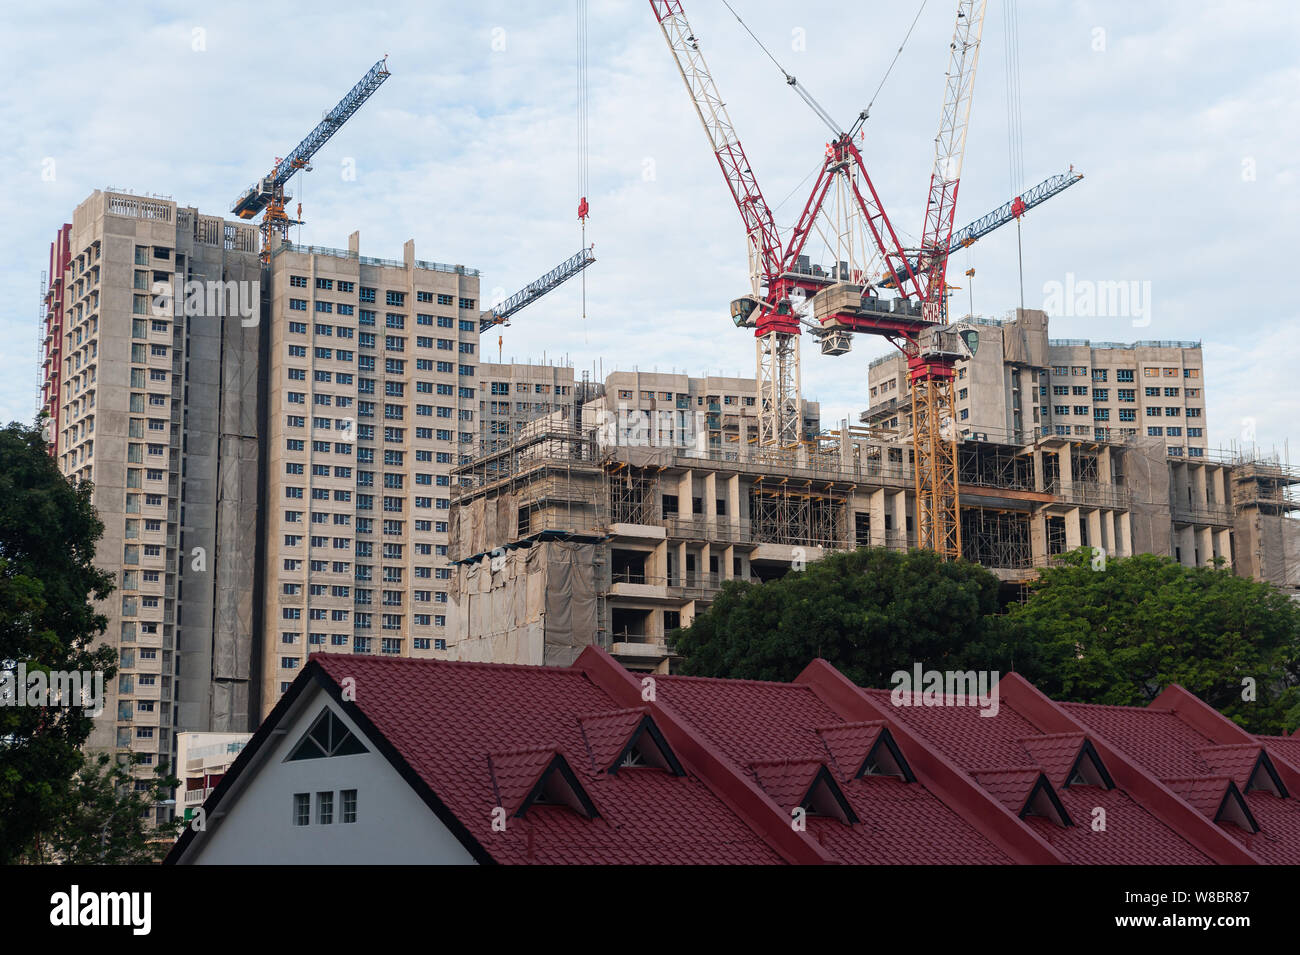 Singapour, République de Singapour, en Asie - les grues de construction sur un site de construction d'habitations HDB immeubles de grande hauteur à Ang Mo Kio. Banque D'Images